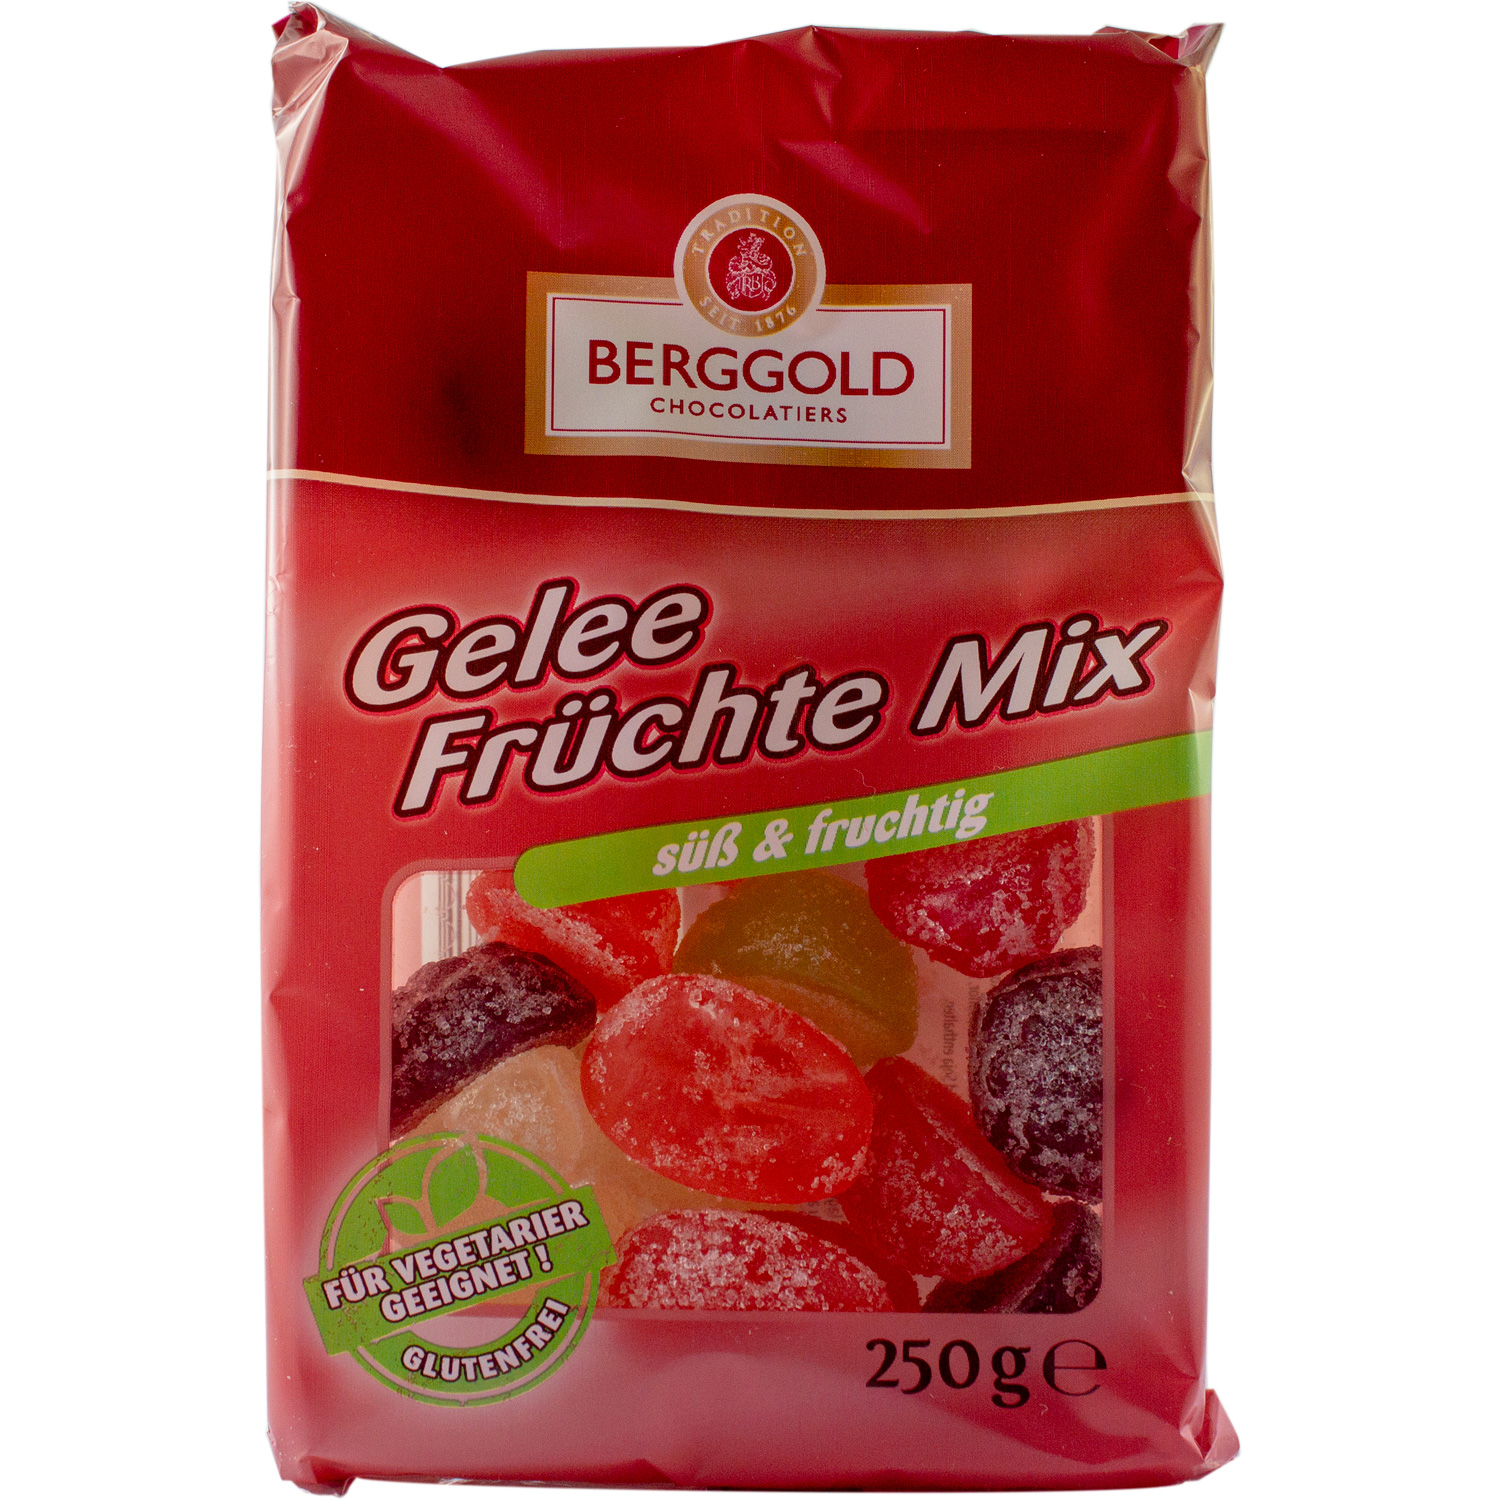 Ossikiste.de | Berggold Gelee Früchte Mix 250g | online kaufen